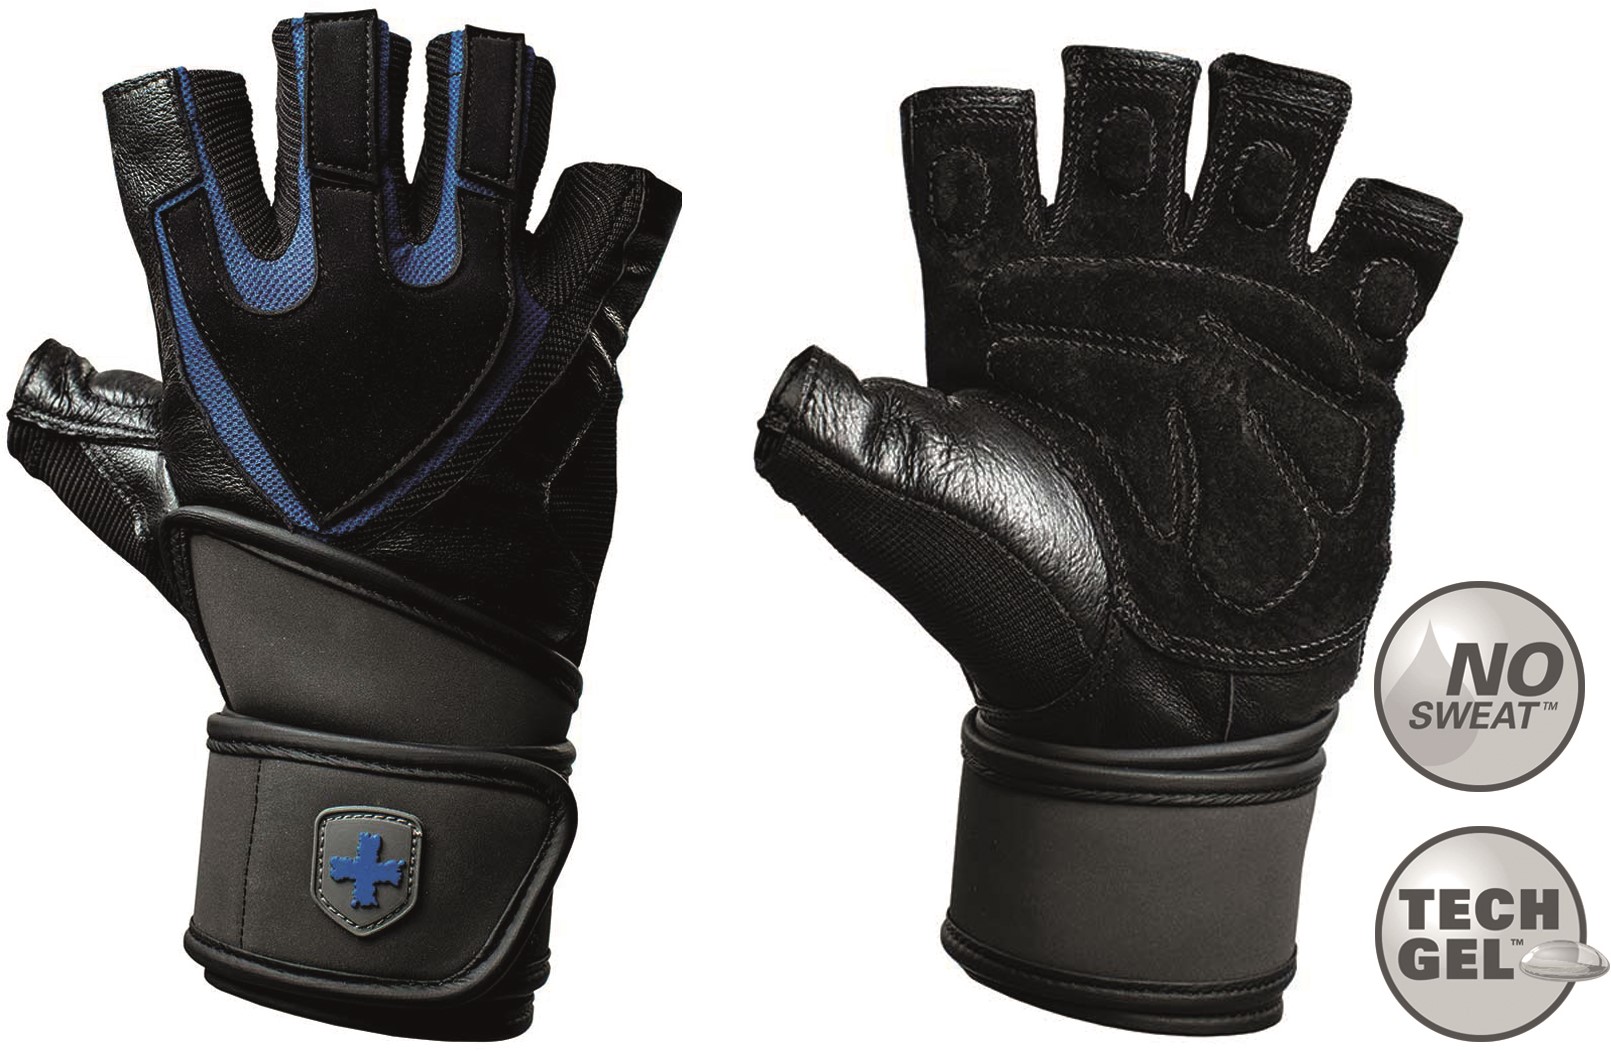 Training Grip Fitness Handschoenen met Wrist - Zwart/Blauw - S | Fitwinkel.nl